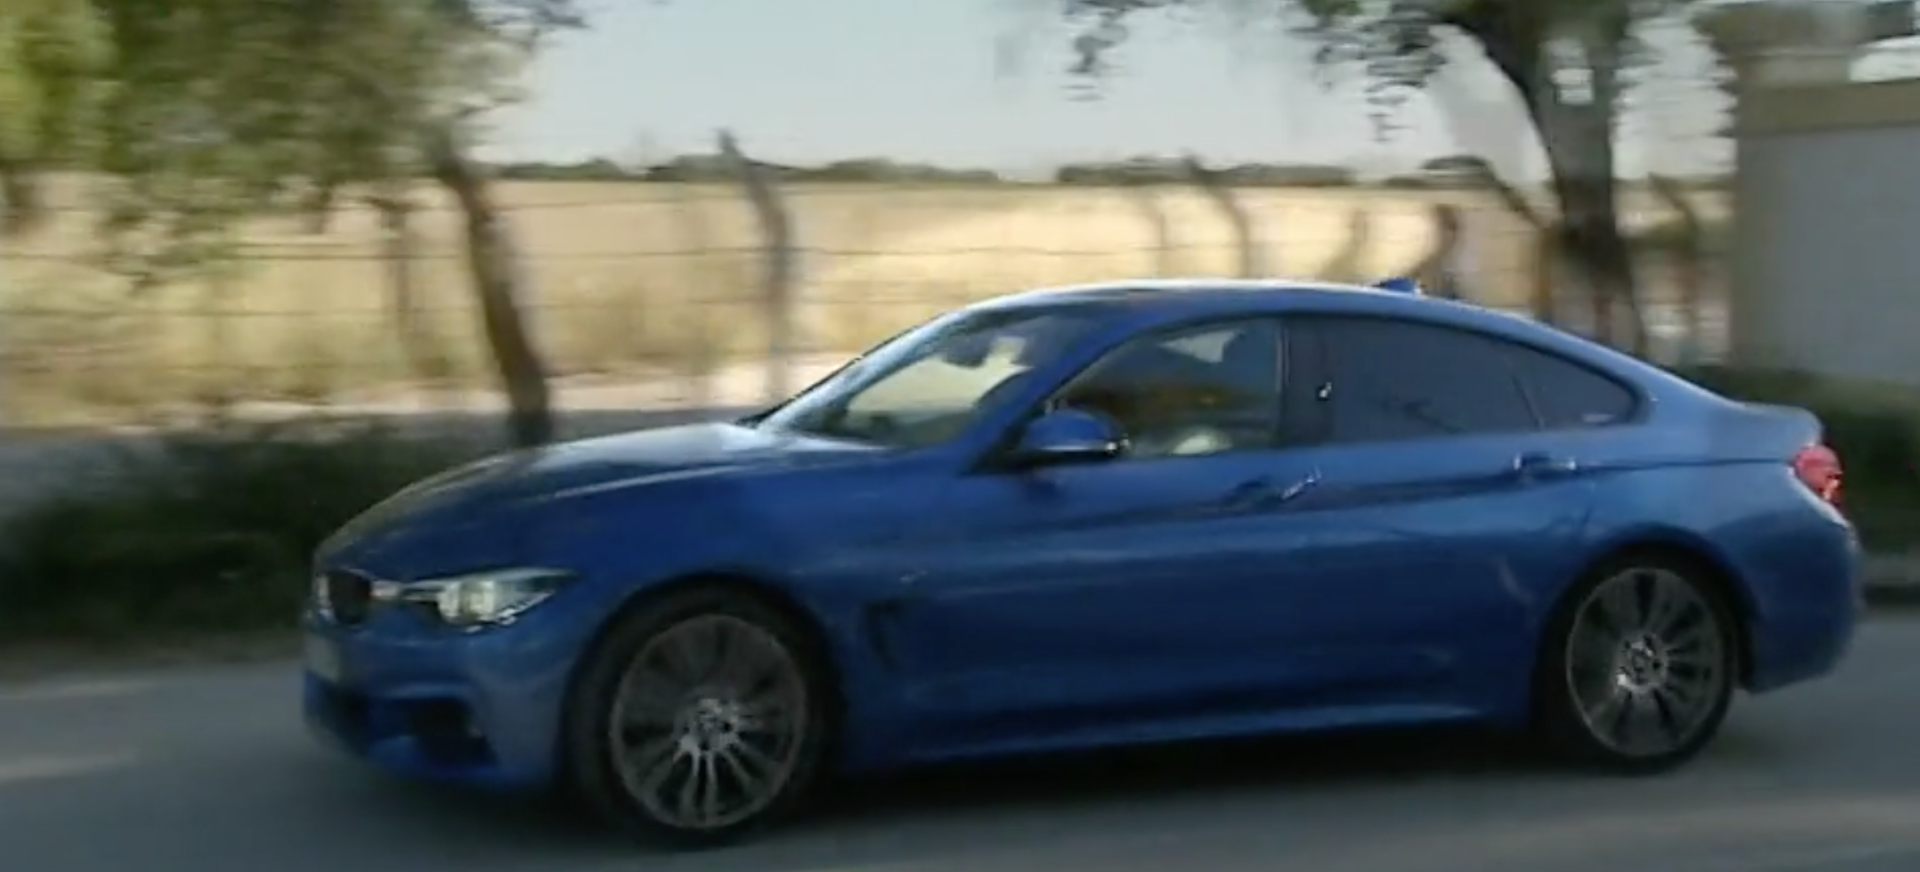 BMW azul entrou na academia para ir buscar suspeitos das agressões